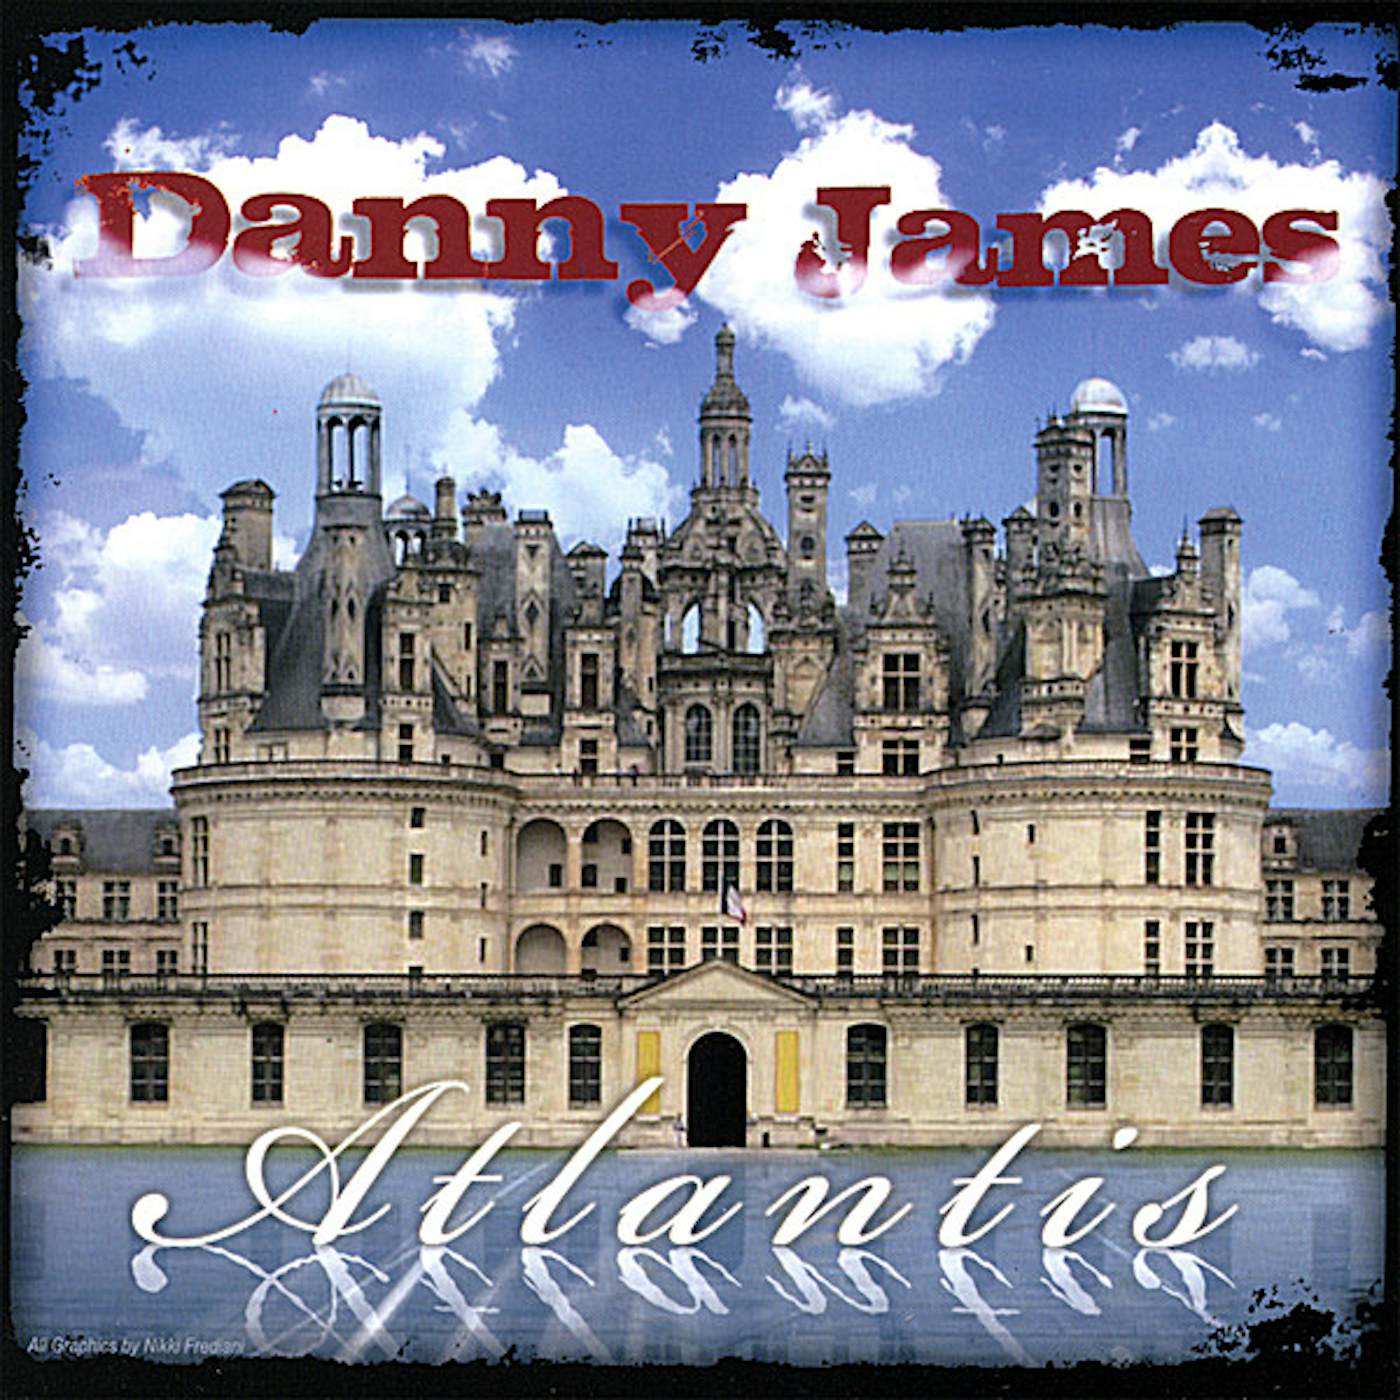 Danny James ATLANTIS CD